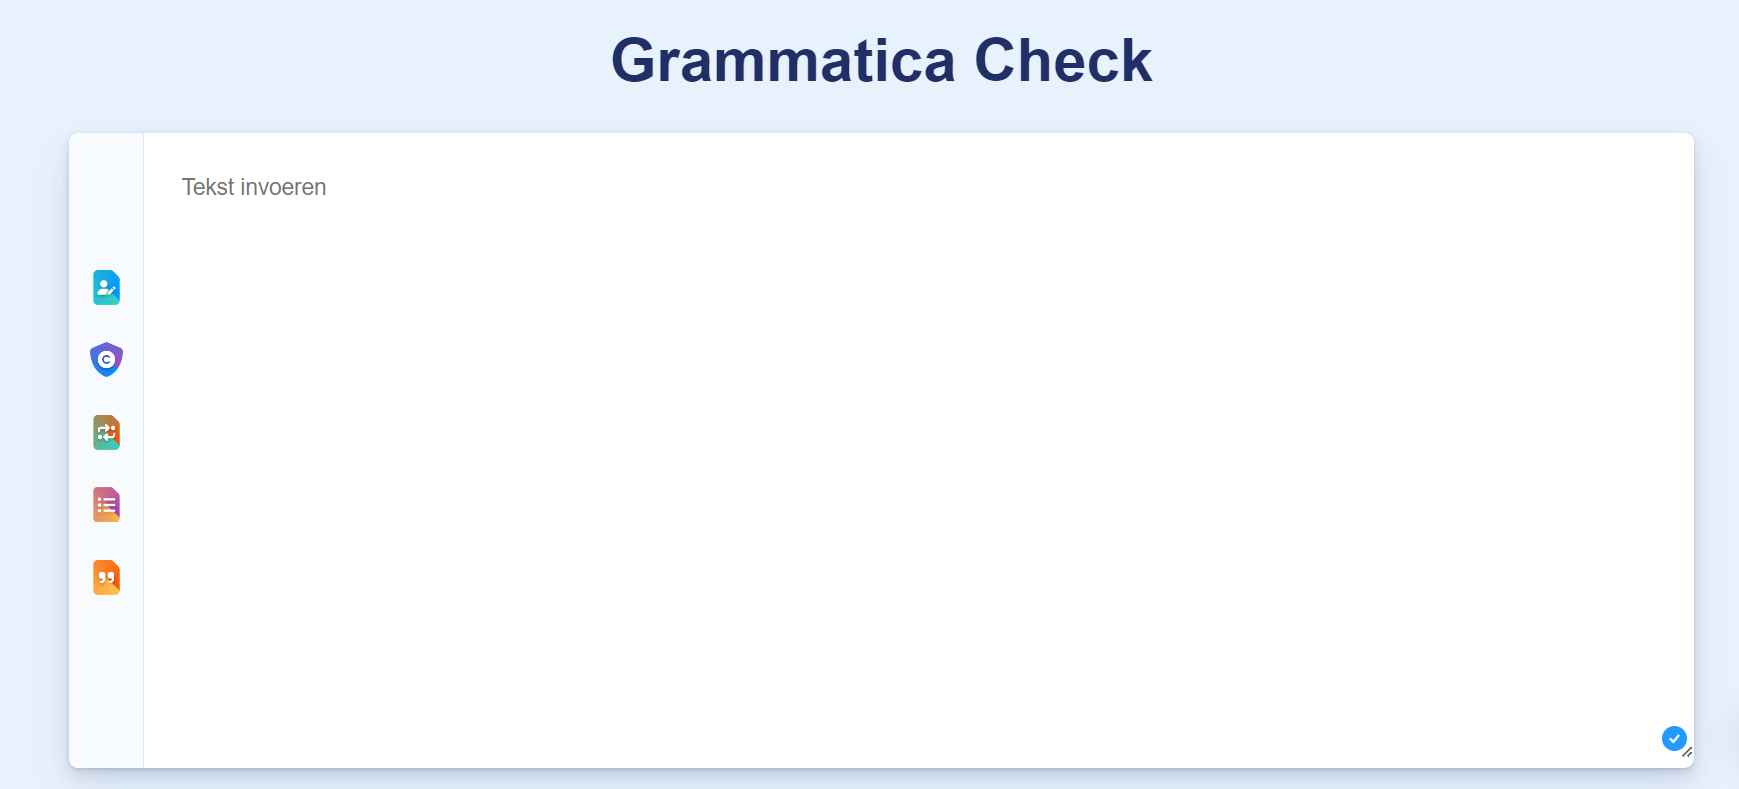 Grammatica Check Scribbr